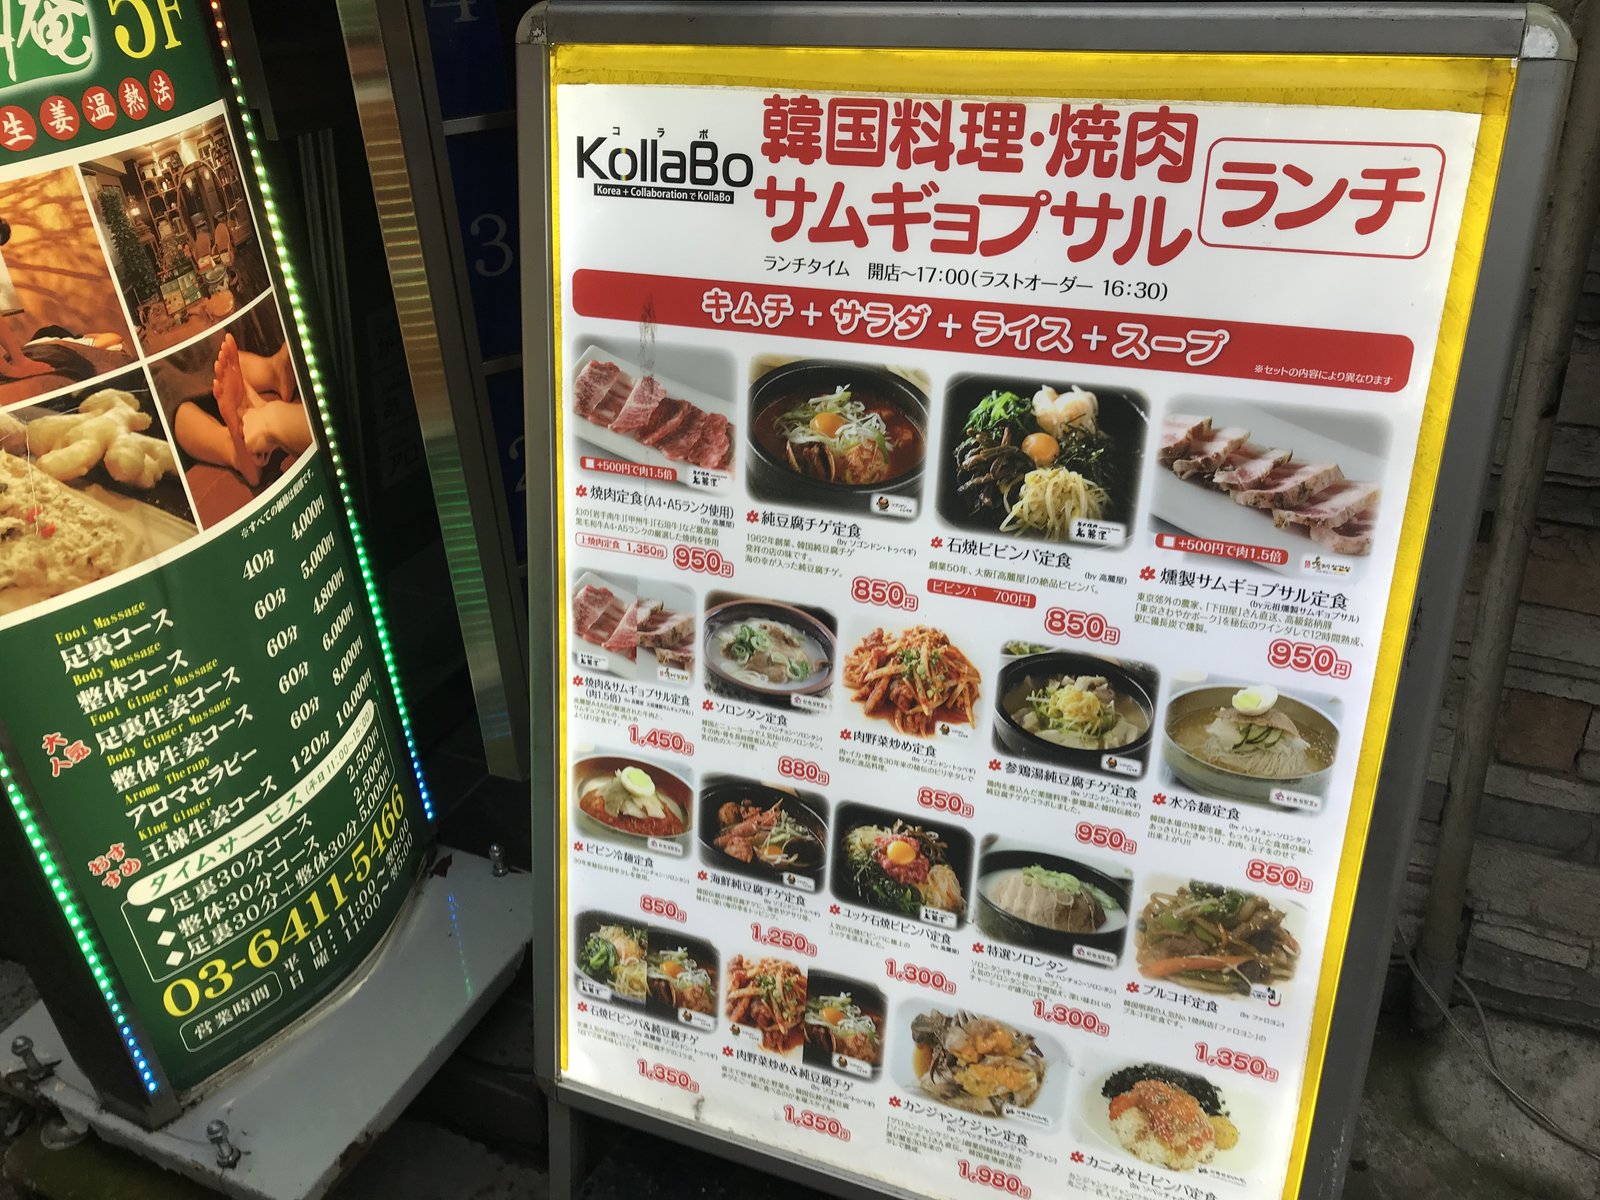 個室ランチ 千円 六本木駅徒歩1分の駅近に美味しい韓国料理やさんを発見 おススメです Playlife プレイライフ